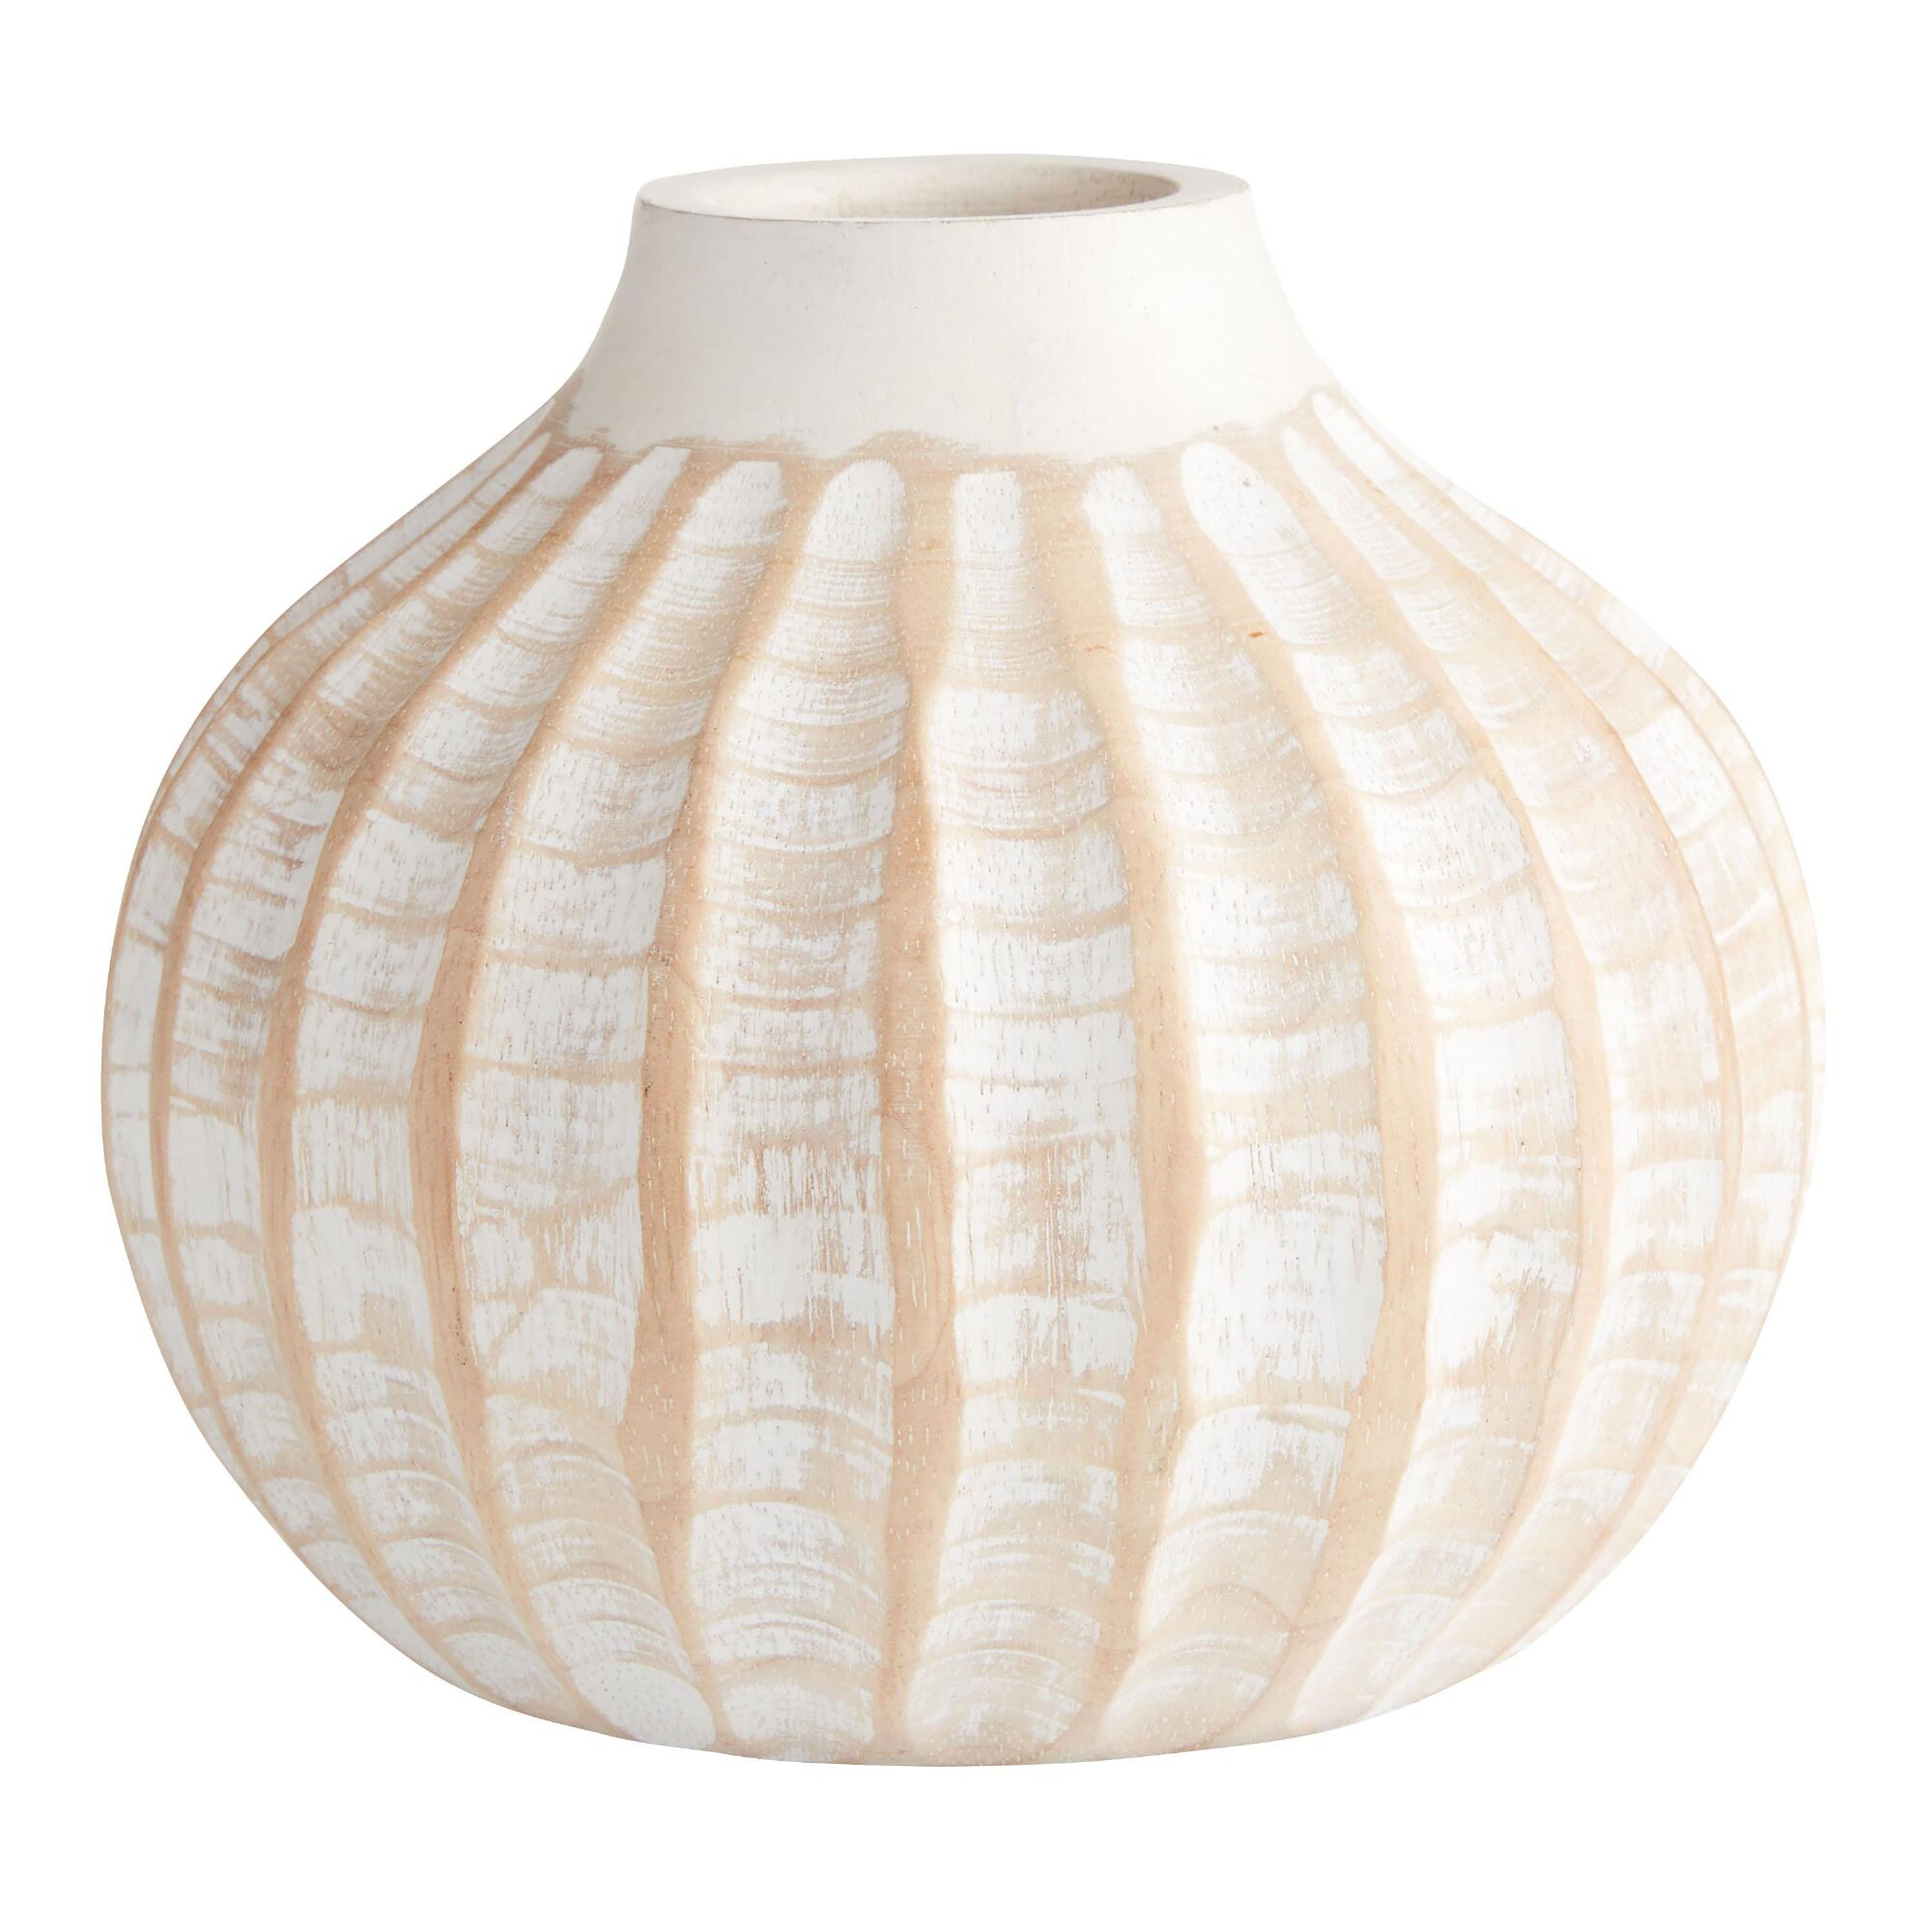 CRAFT Whitewash Carved Mango Wood Urchin Vase | World Market